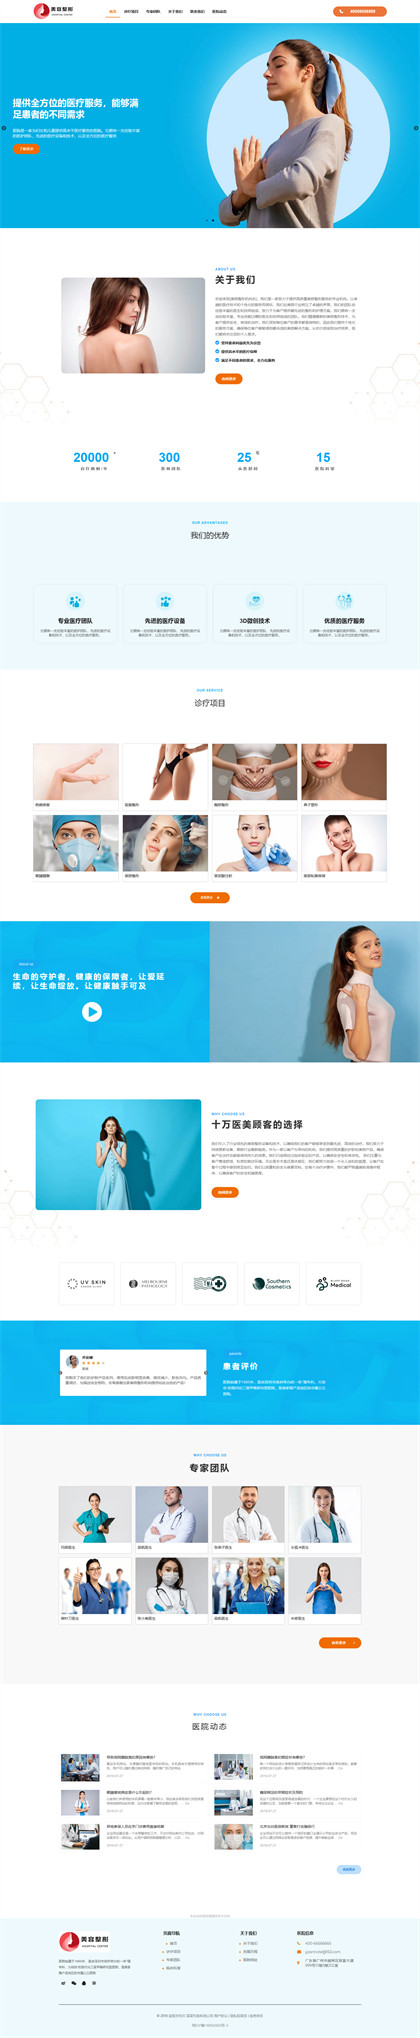 医疗美容-整形医院-整容医院-整容机构-医美加盟-中韩整形-网站模板网站模板预览图片